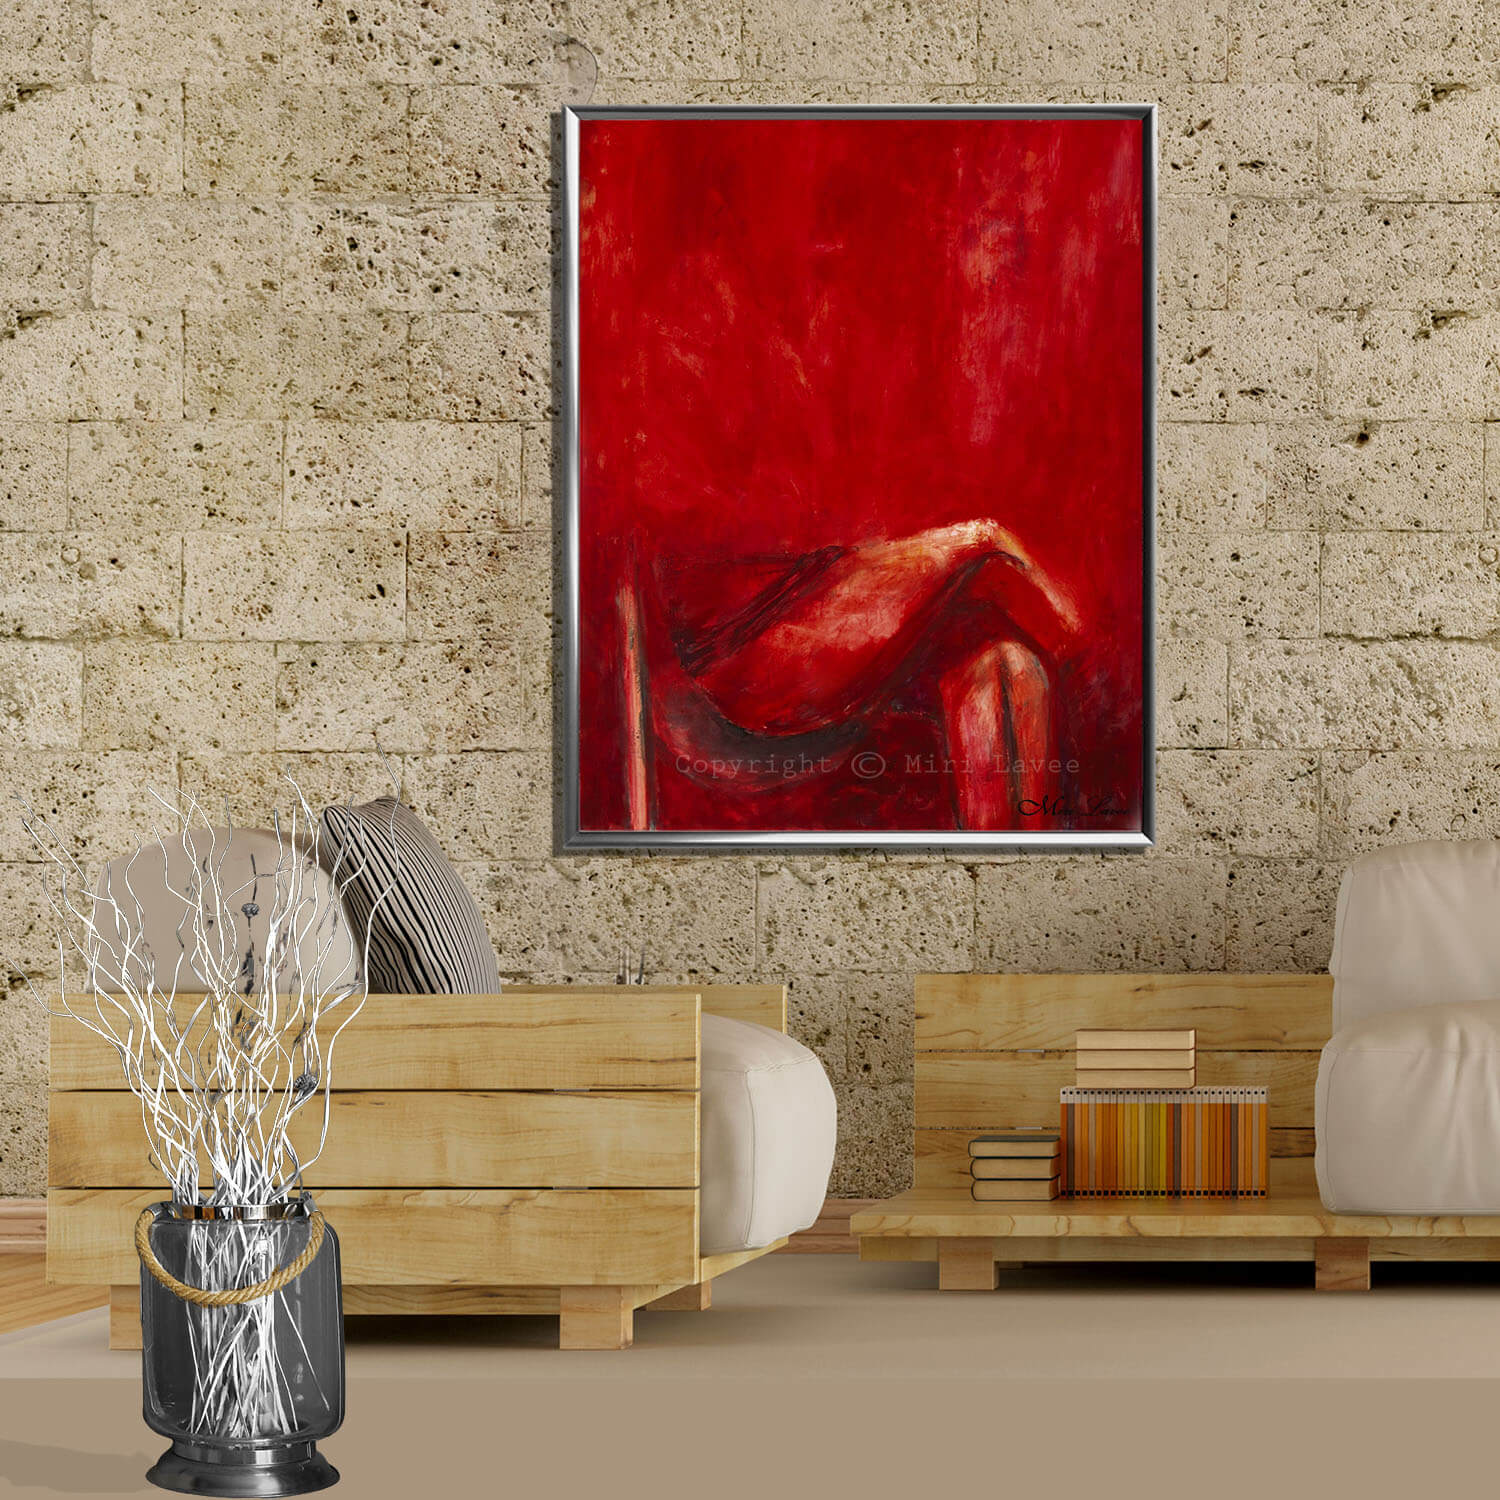 ציור גדול מופשט של דמות חלקית יושבת רגל על רגל באדום תמונה בסלון מעוצב ציירת מירי לביא